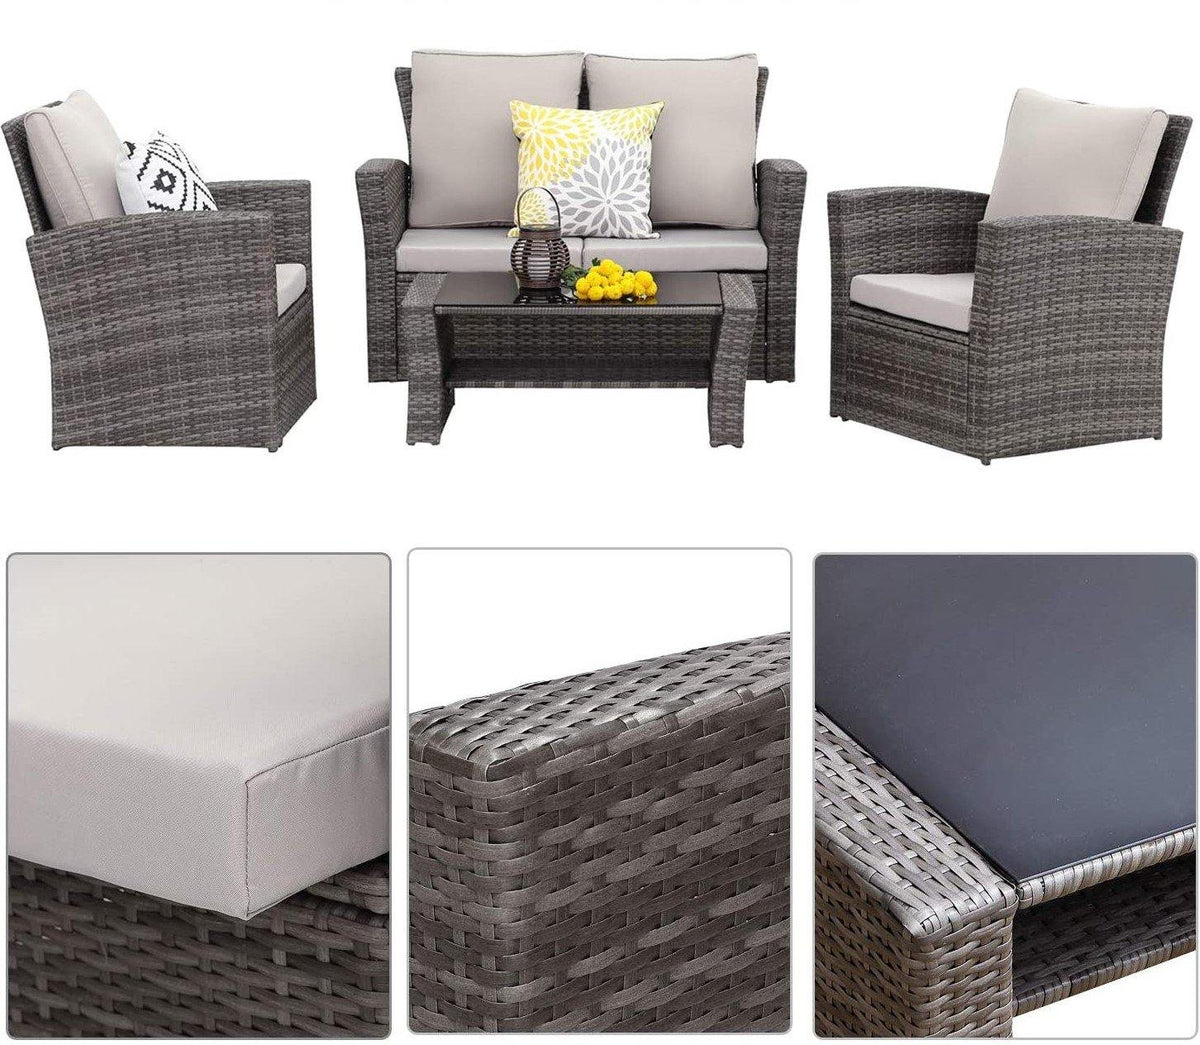 Lazio Rattan Garden Furniture Sofa Set - Black Rattan / Dark Grey Cushions Rattan Furniture MaxiFurn 